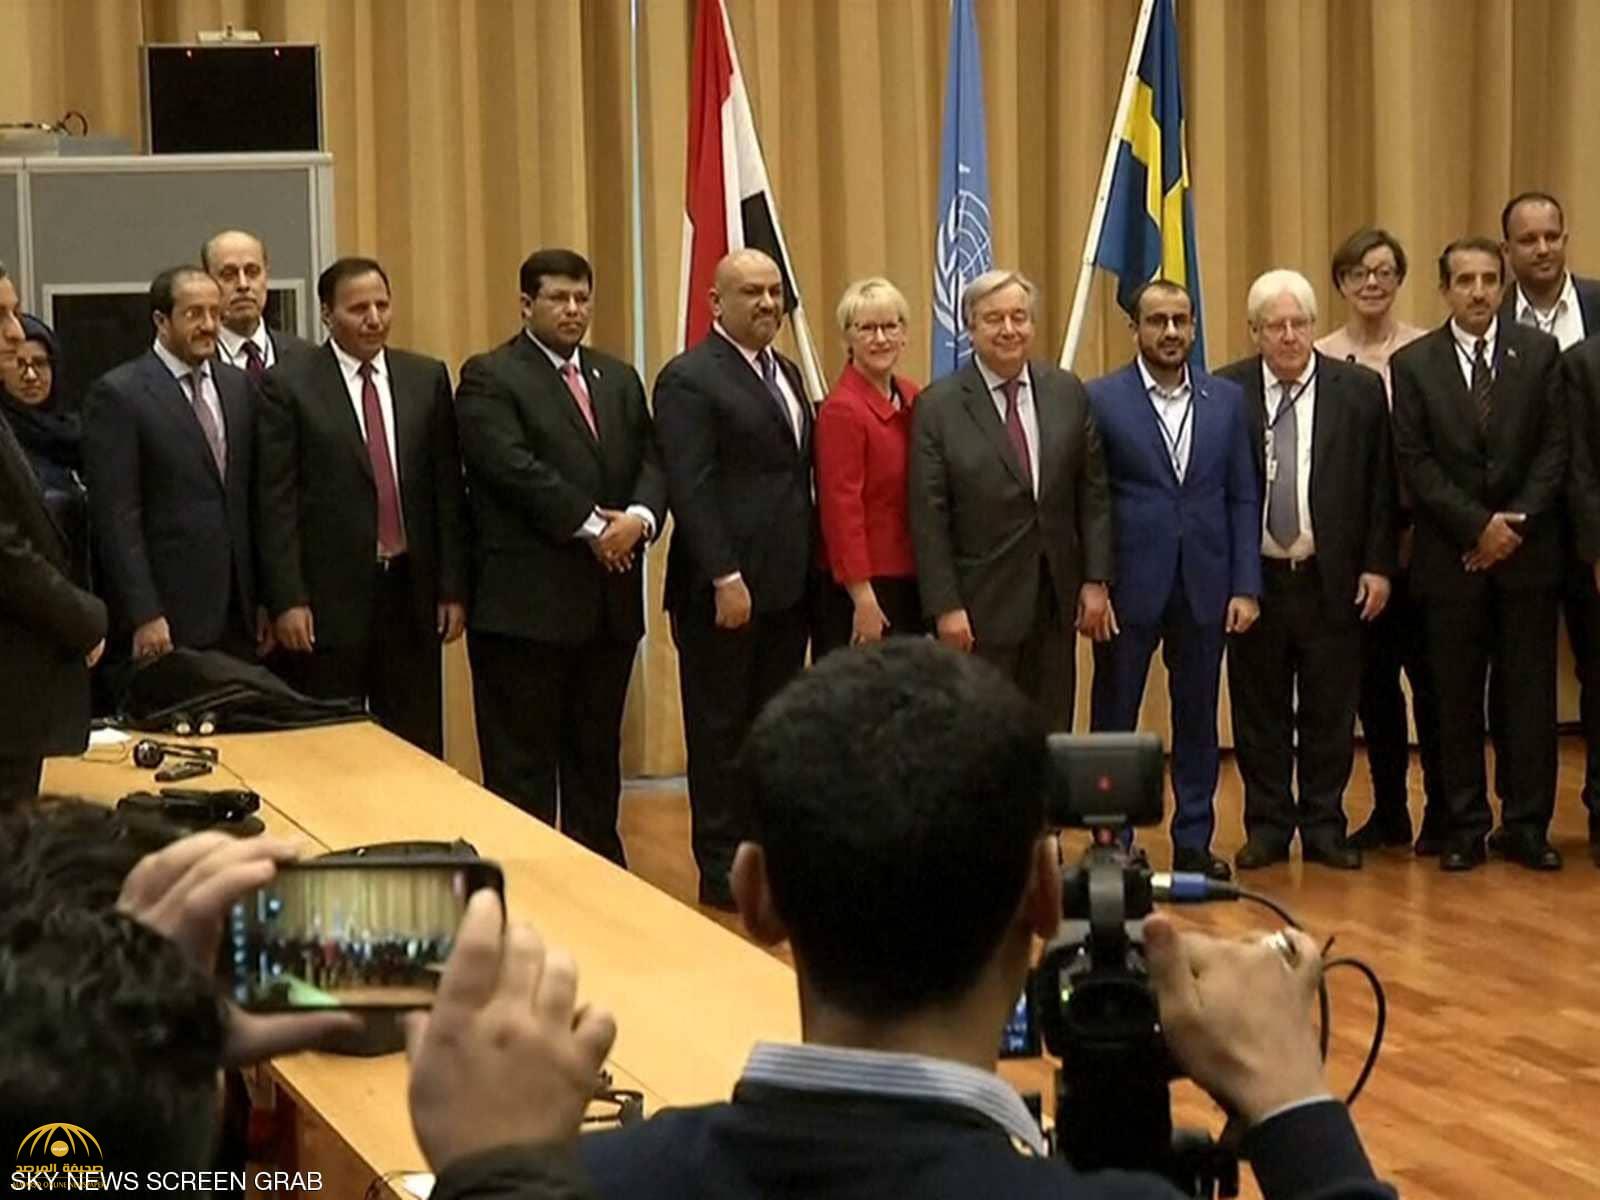 مشاورات السويد تعلن انفراجة كبيرة بأزمة اليمن.. تفاصيل الاتفاق بين الجانبين تشمل الحديدة وتعز!